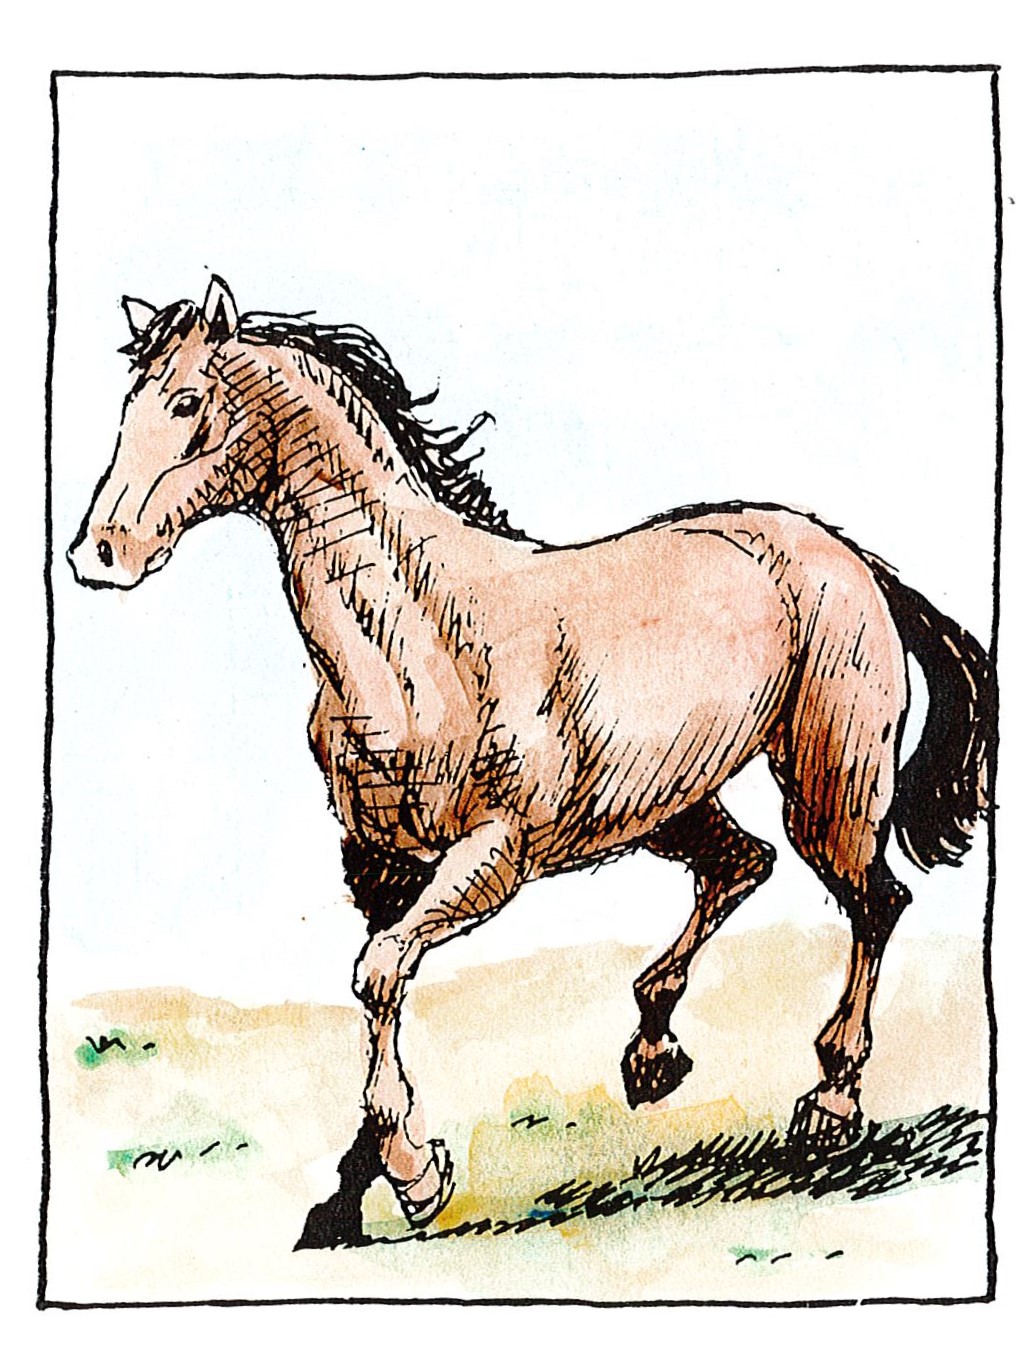 Άλογο